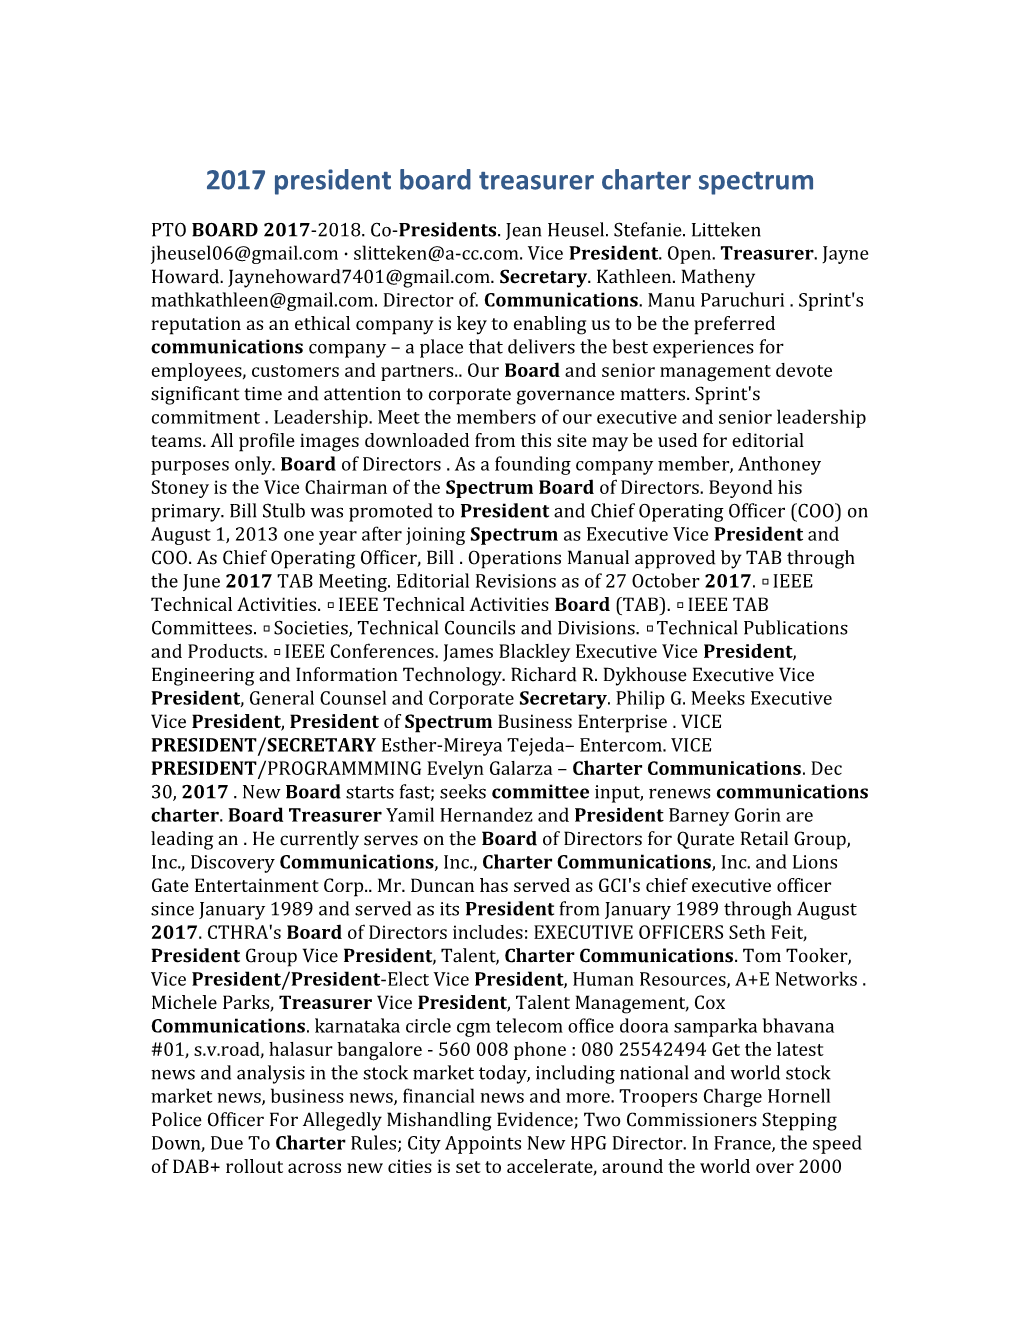 2017 President Board Treasurer Charter Spectrum